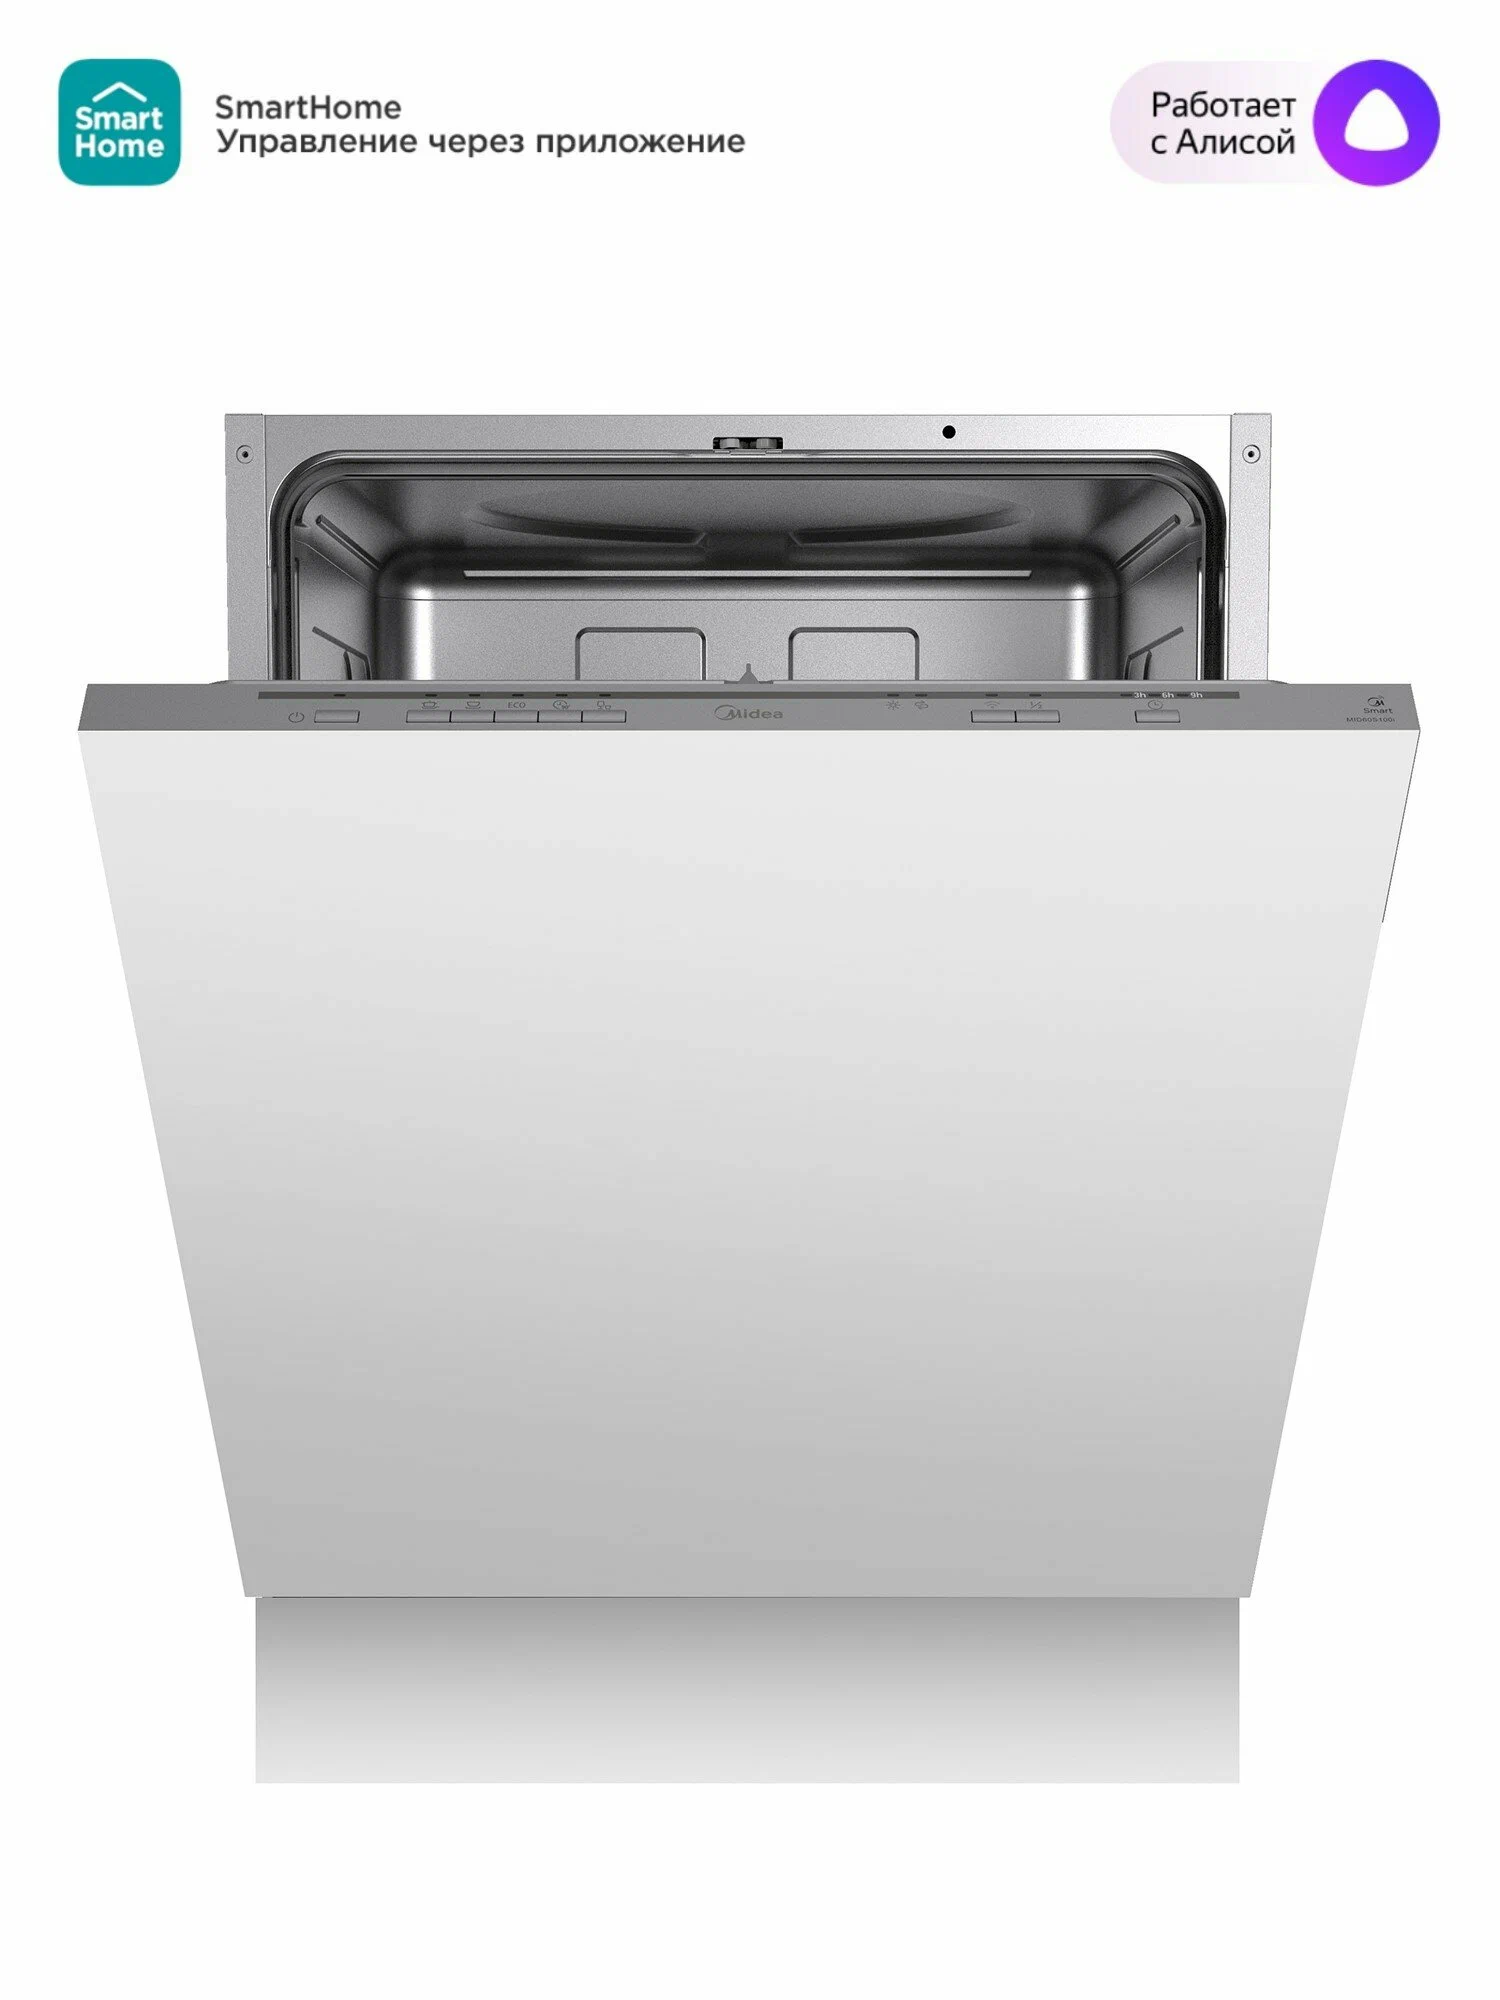 Посудомоечная машина встраиваемая полноразмерная Midea S100 MID60S100I, серый (MID60S100I)